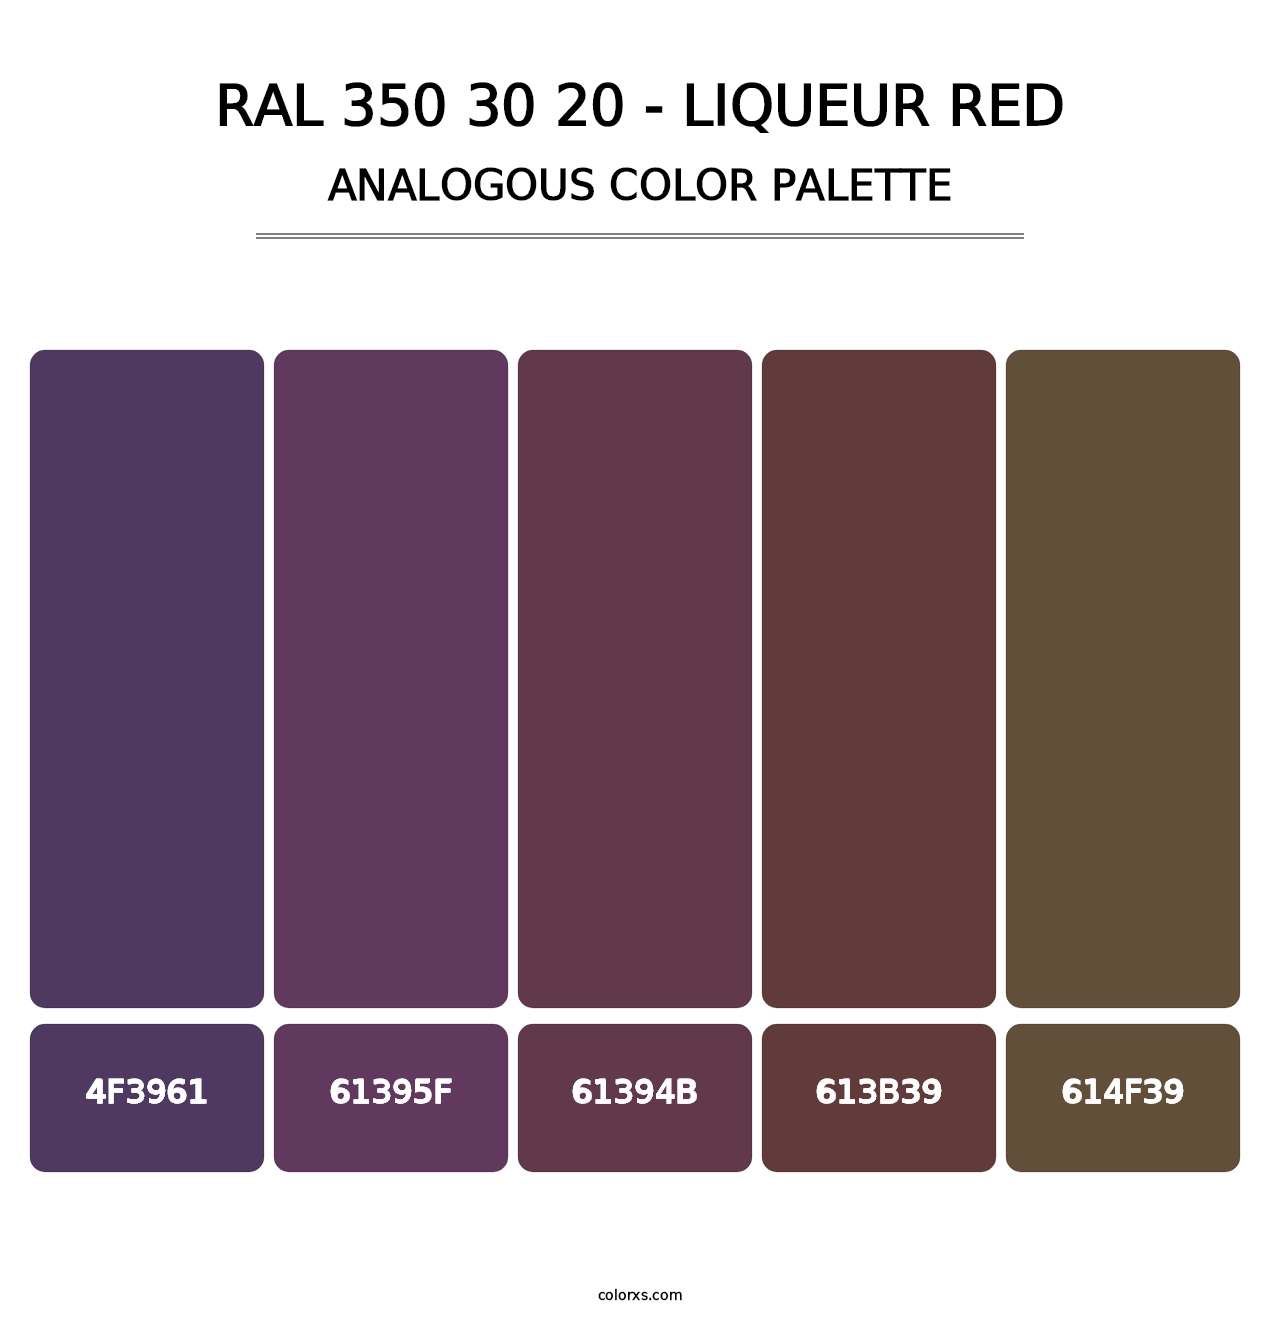 RAL 350 30 20 - Liqueur Red - Analogous Color Palette